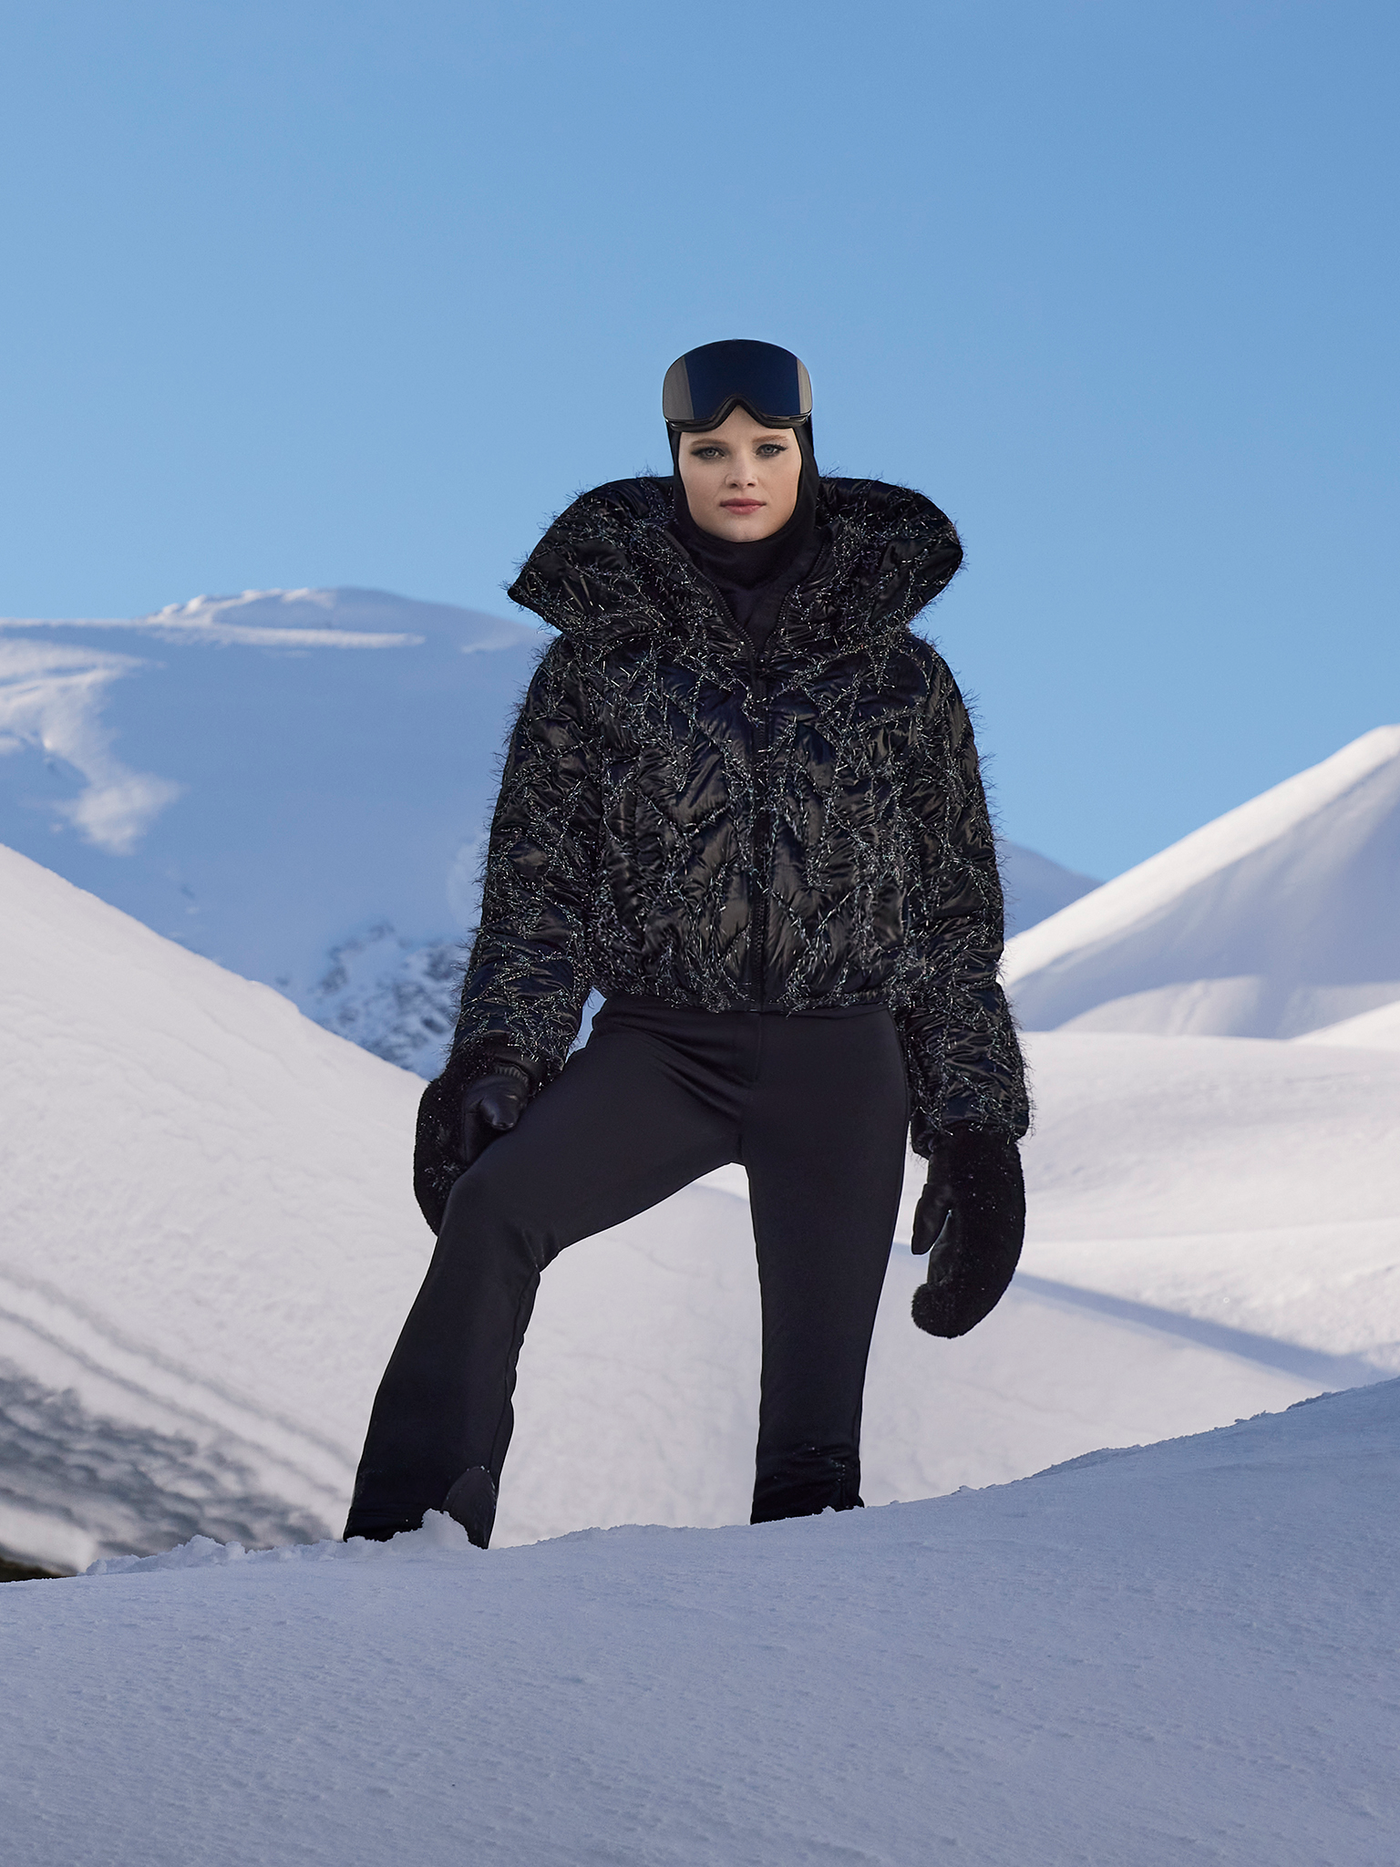 Goldbergh Starrysky Ski Jacket in Black with Lurex